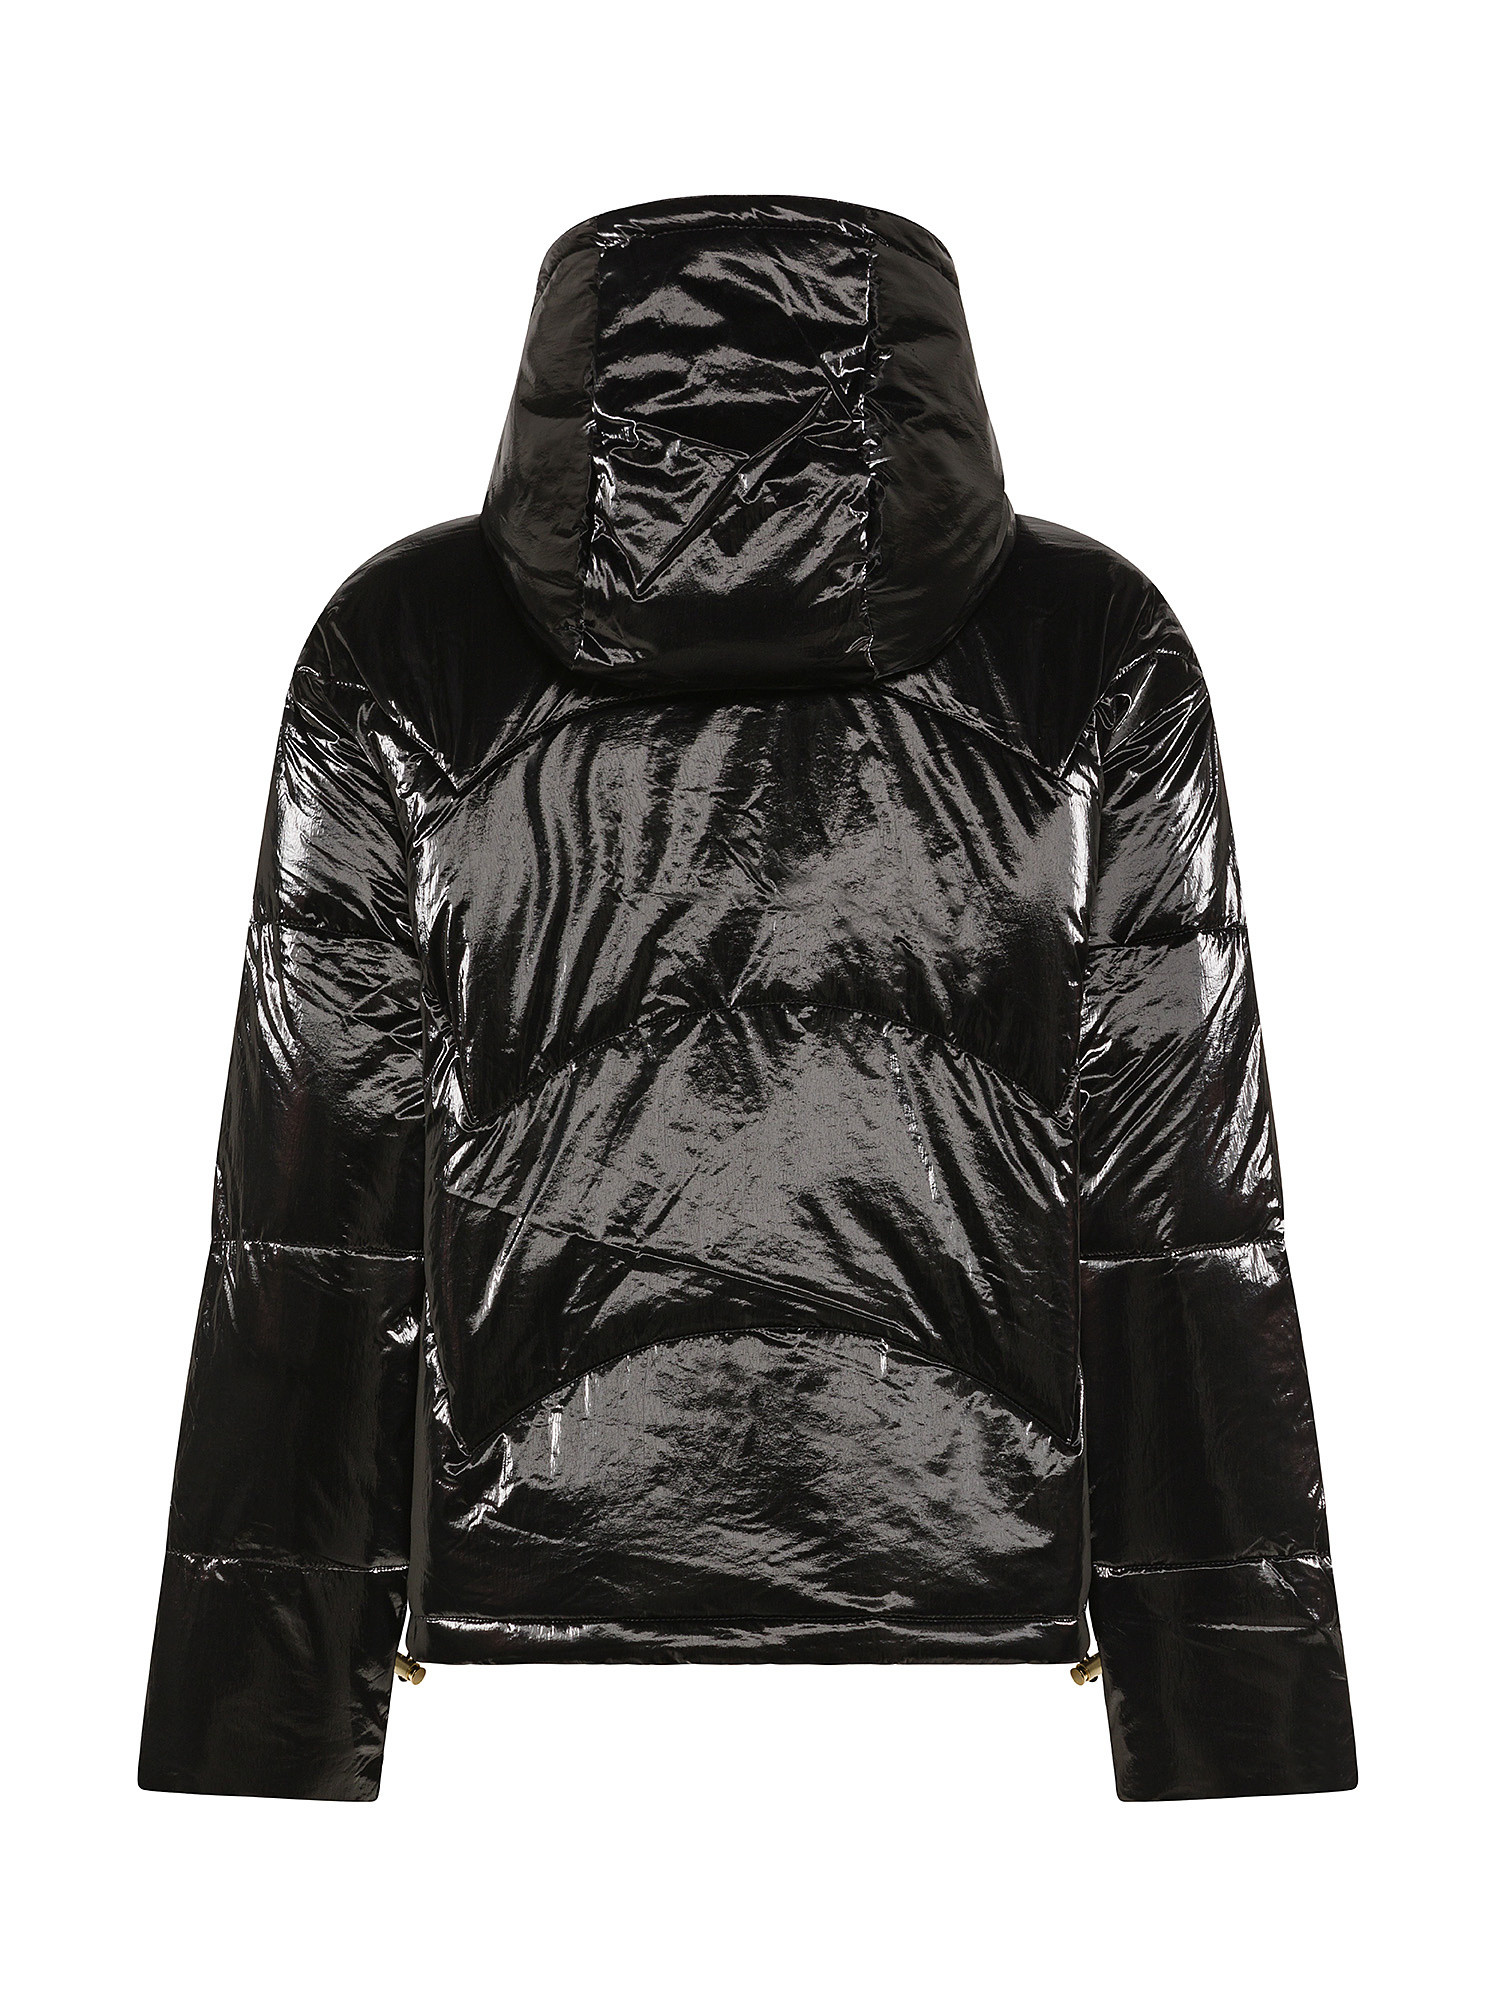 Armani Exchange - Padded nylon jacket, Black, large image number 1